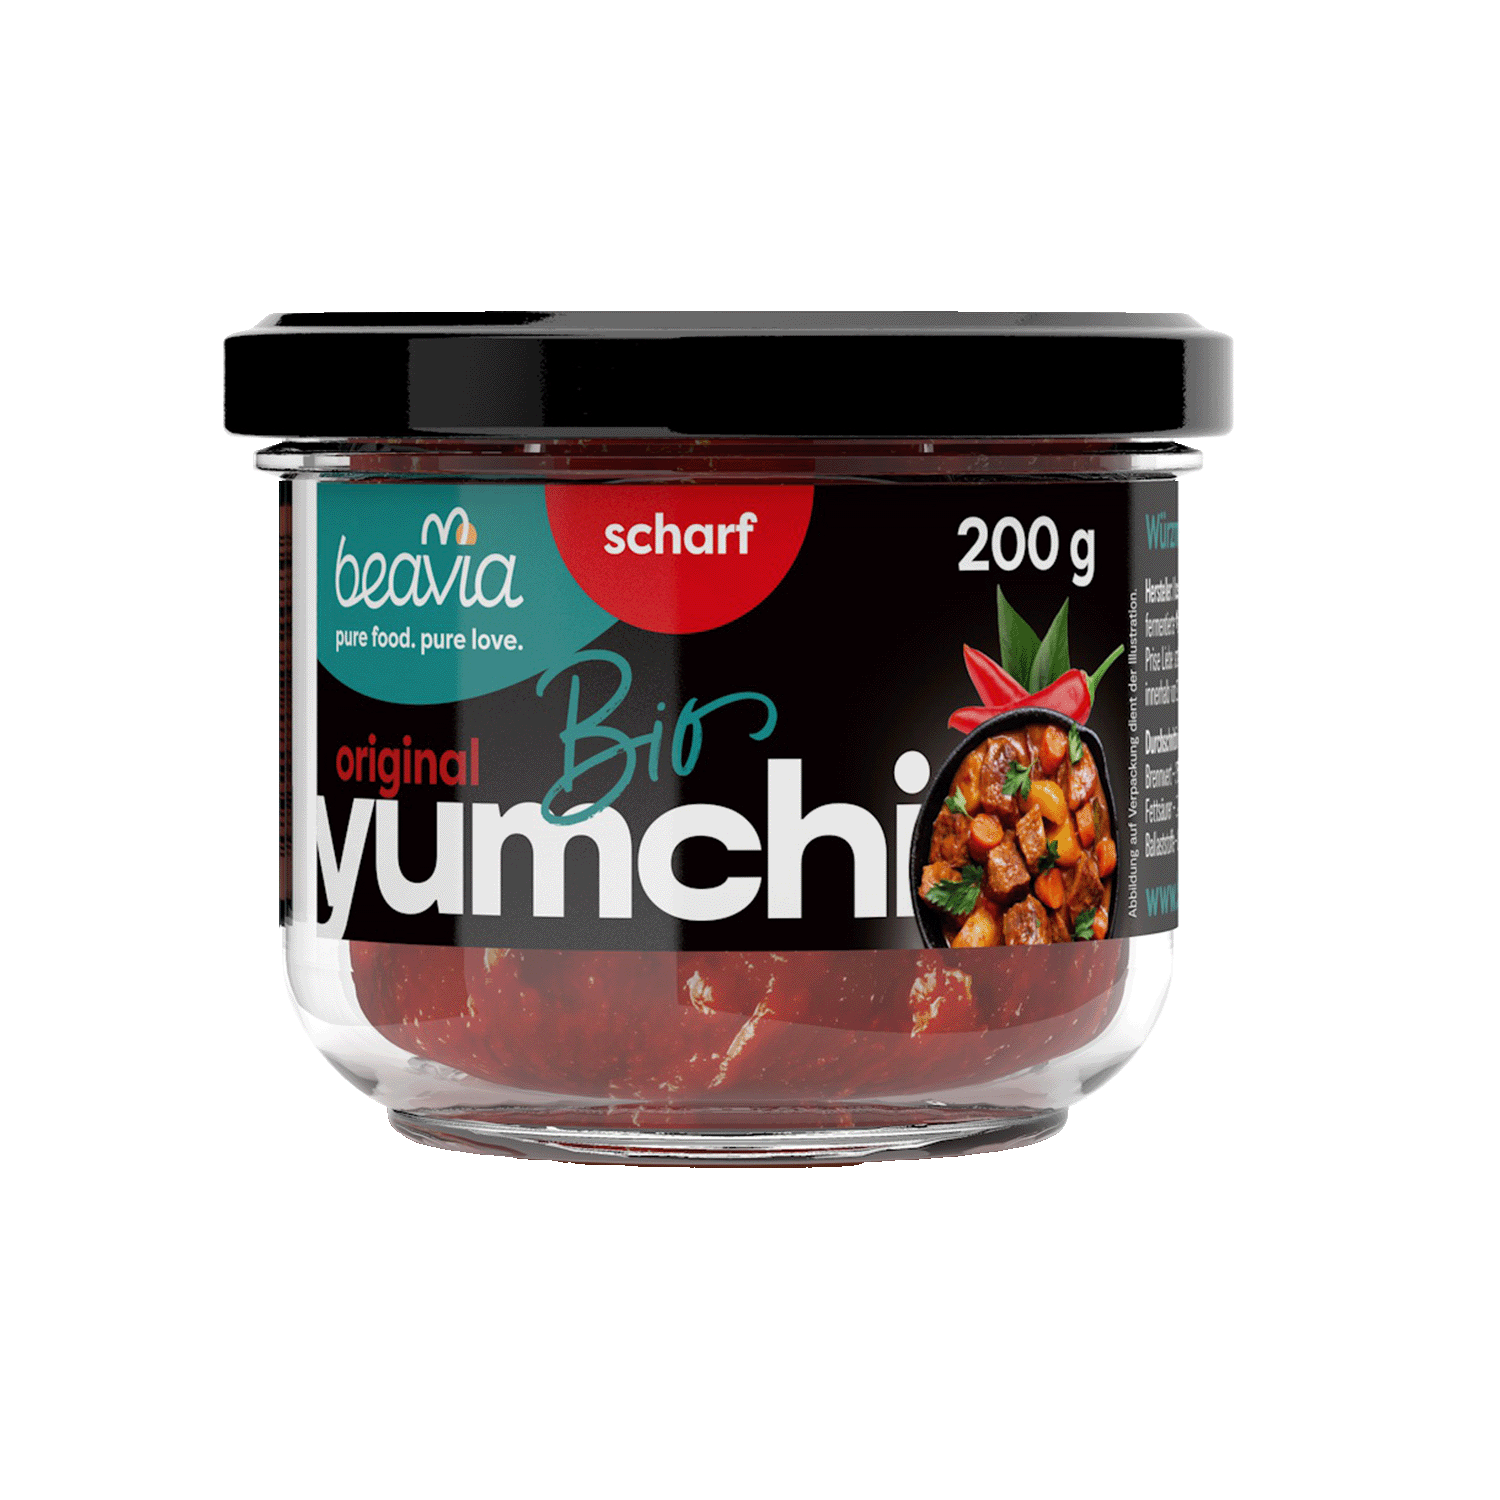 Sauce Yumchi spicy, Organic, 200g